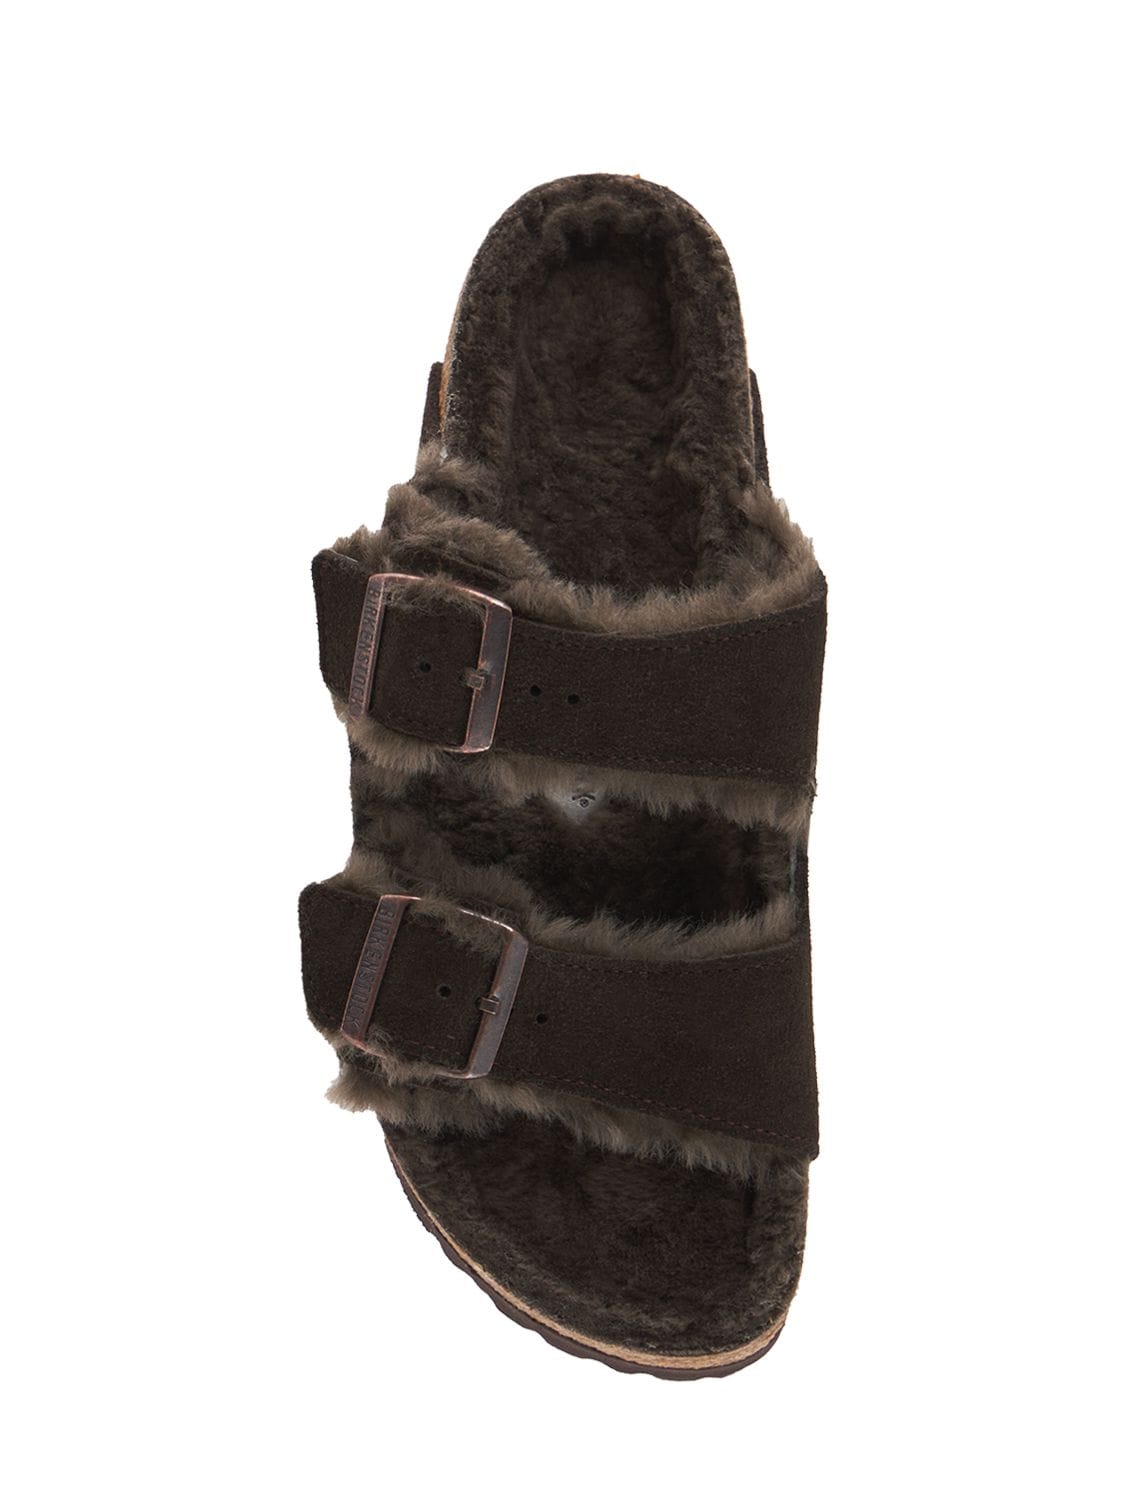 Shop Birkenstock Arizona Shearling & Suede Sandals In Dark Brown